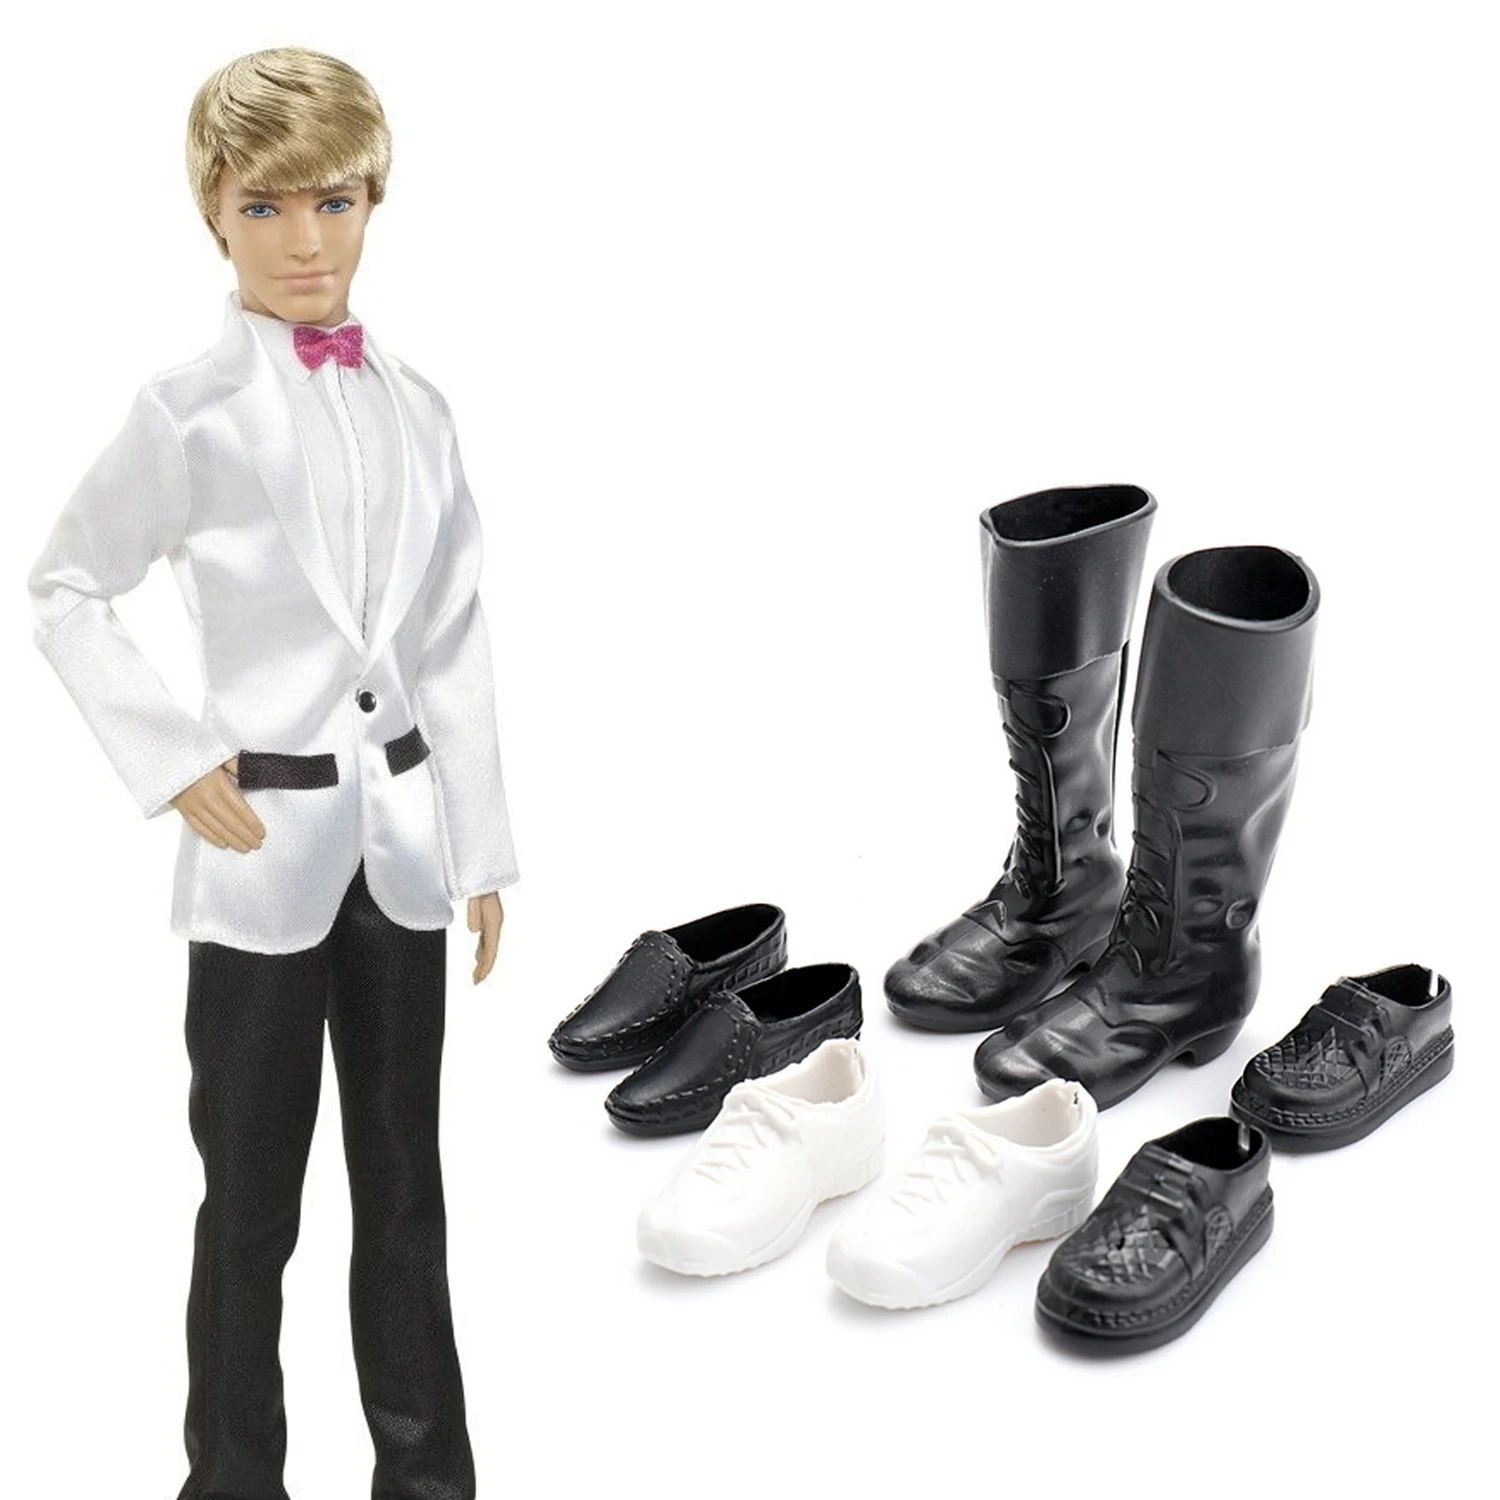 5 комплектов, модная повседневная одежда Кен, кукла, одежда, куртка, штаны, наряды, аксессуары для куклы КЕН Барби, детские подарки на день рождения, Рождество